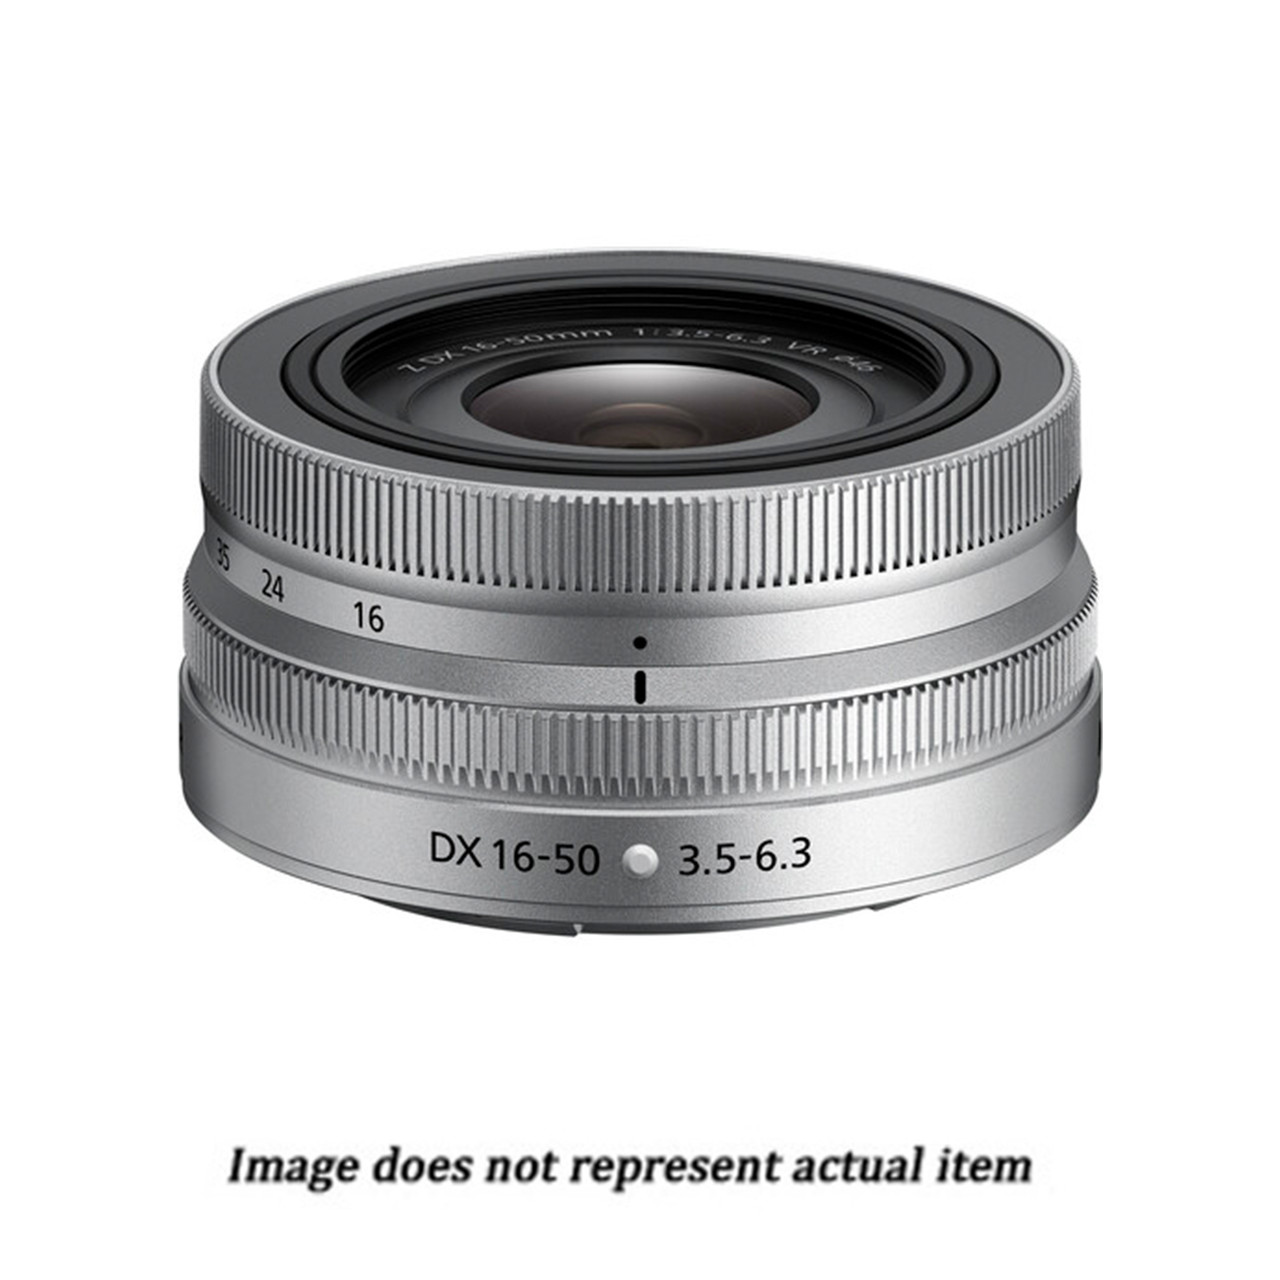 NIKKOR Z DX 16-50mm f/3.5-6.3 VR Lens (Silver) (USED) - S/N 30037814